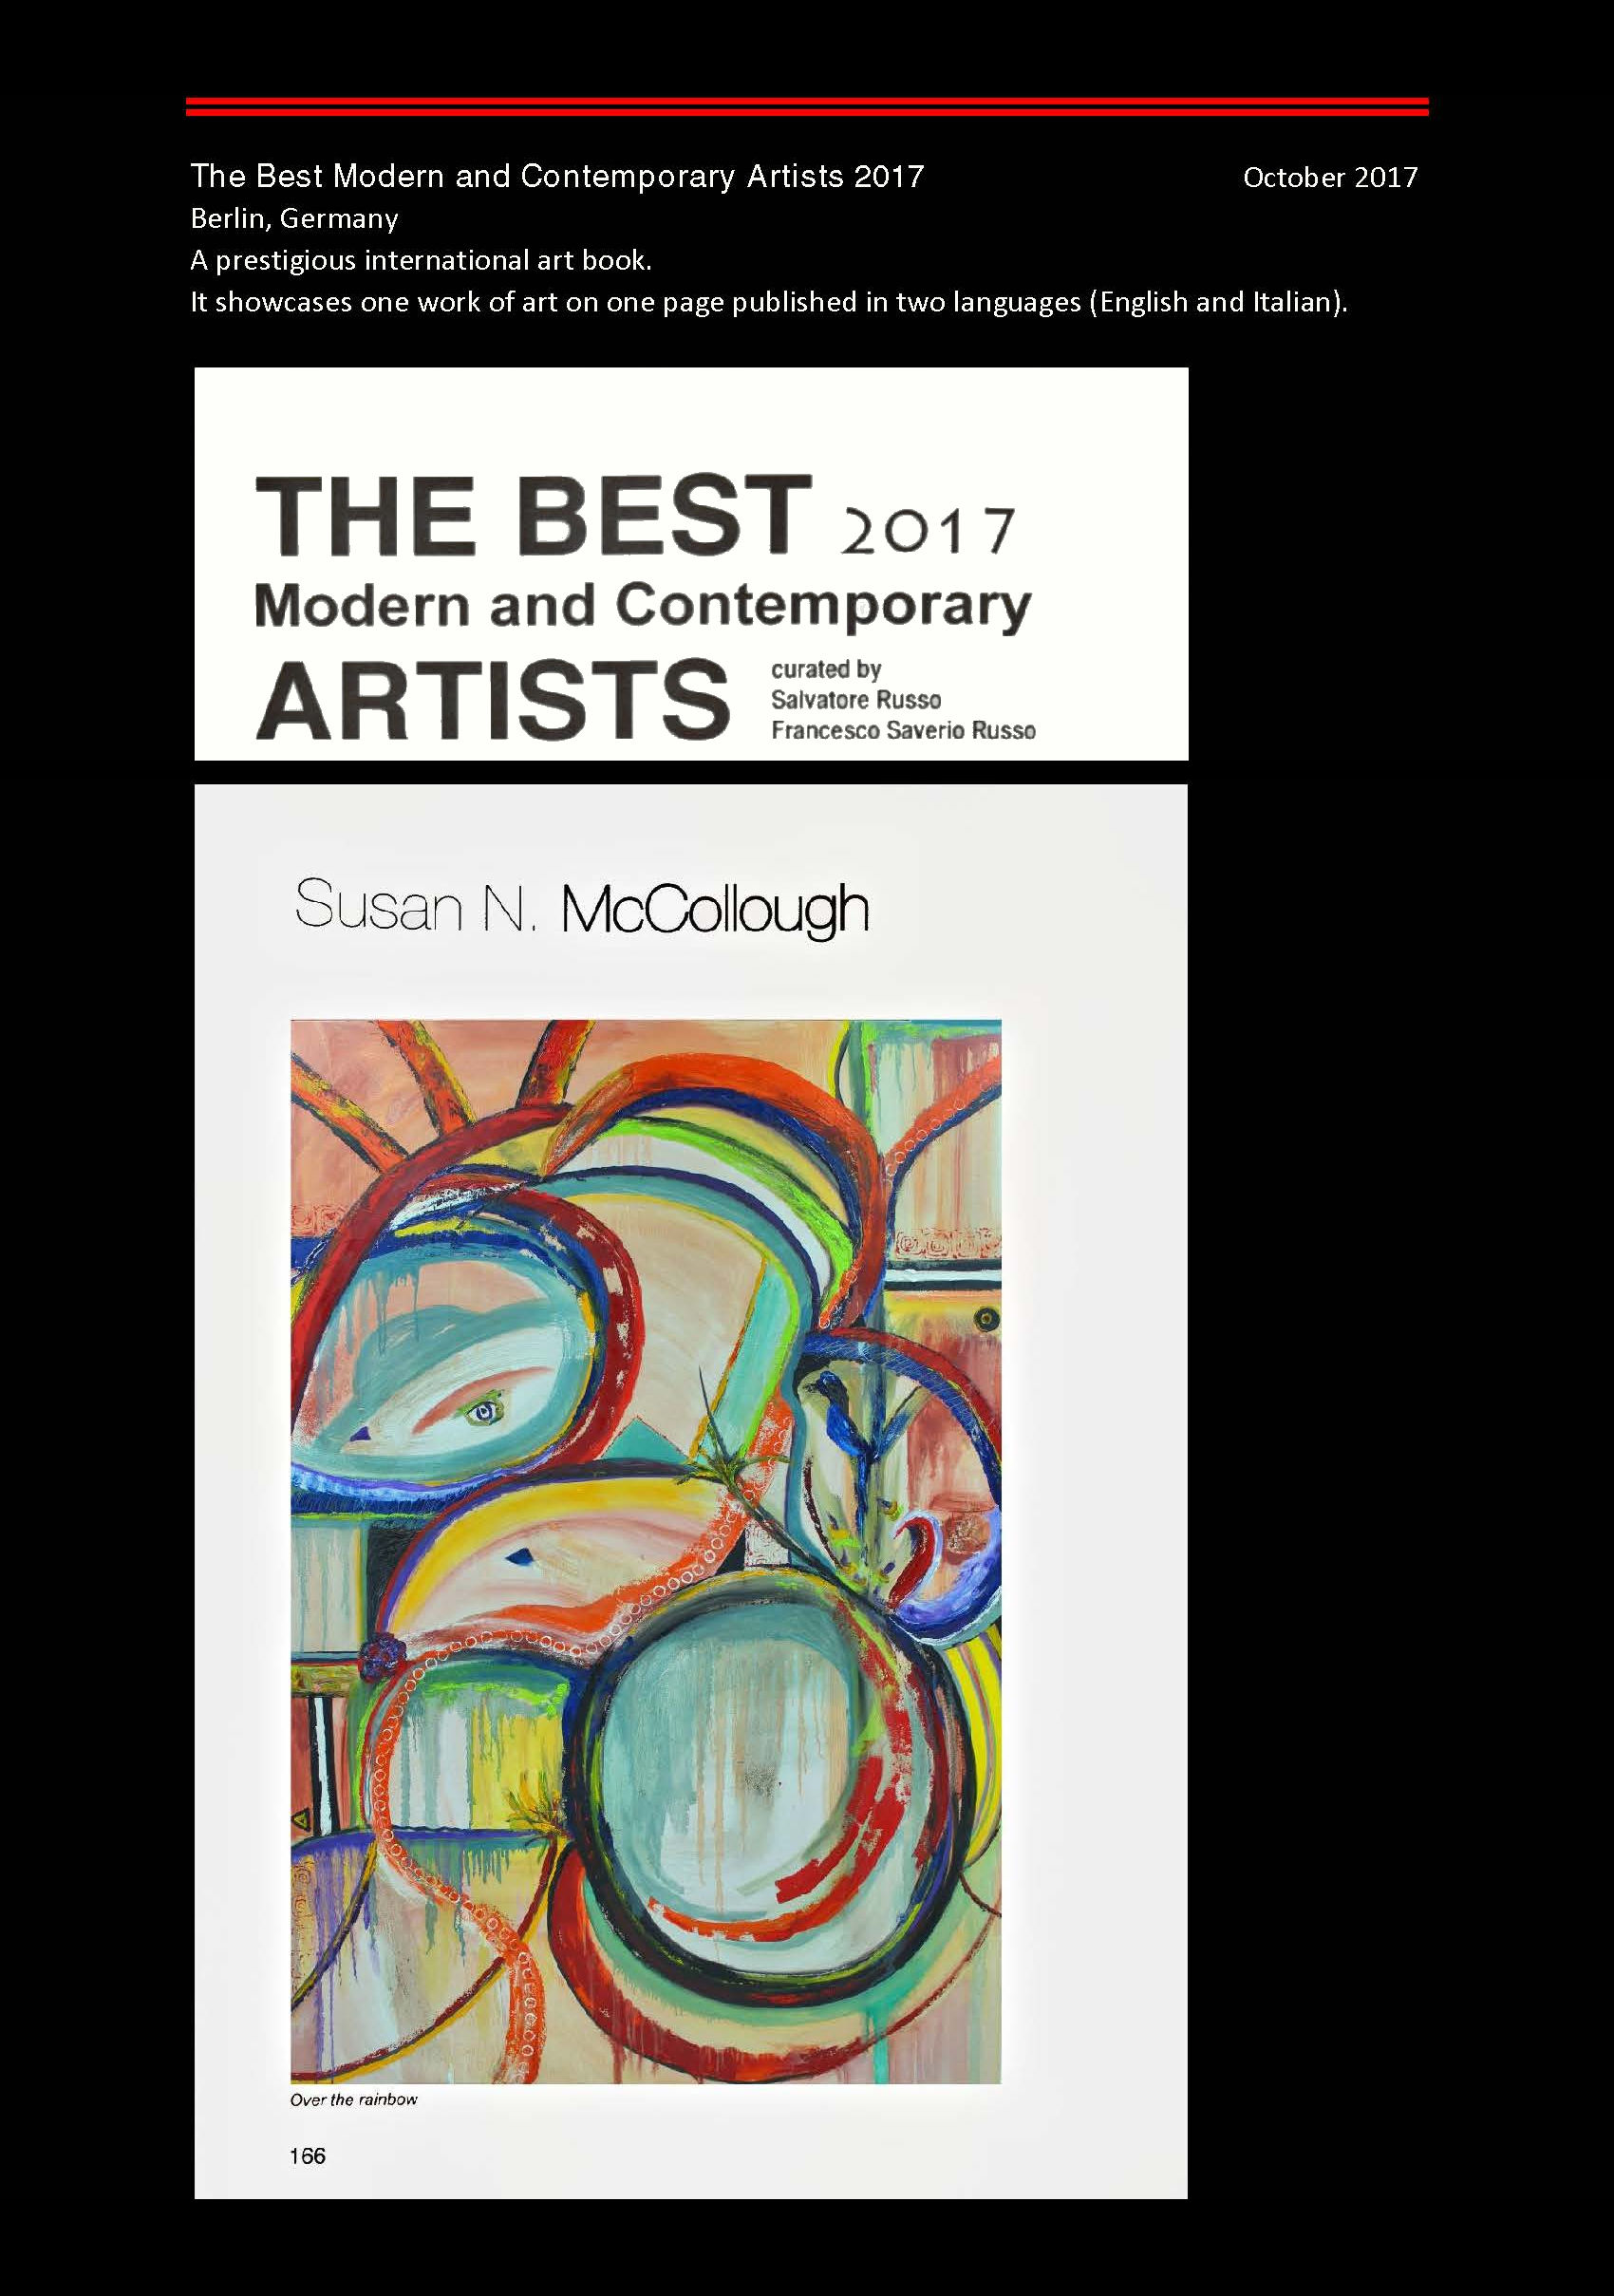 SUSAN N. MCCOLLOUGH ART